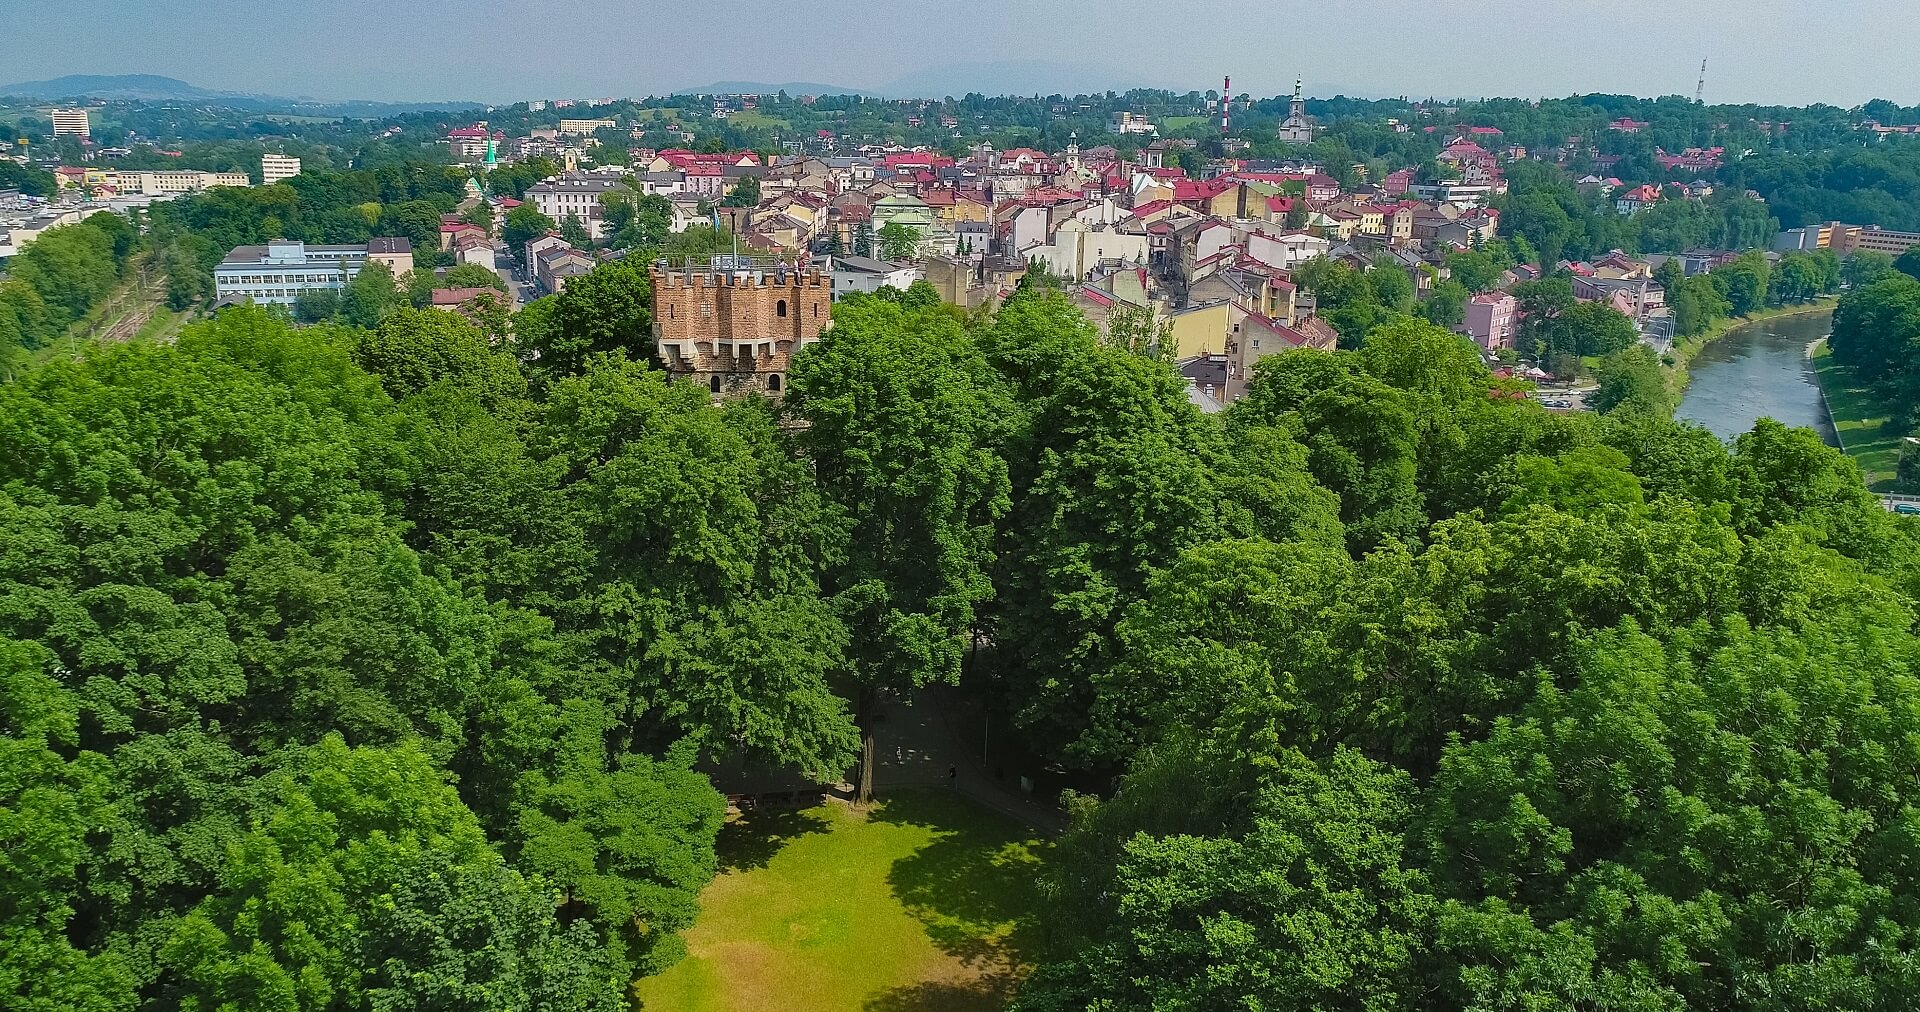 A walk through Cieszyn